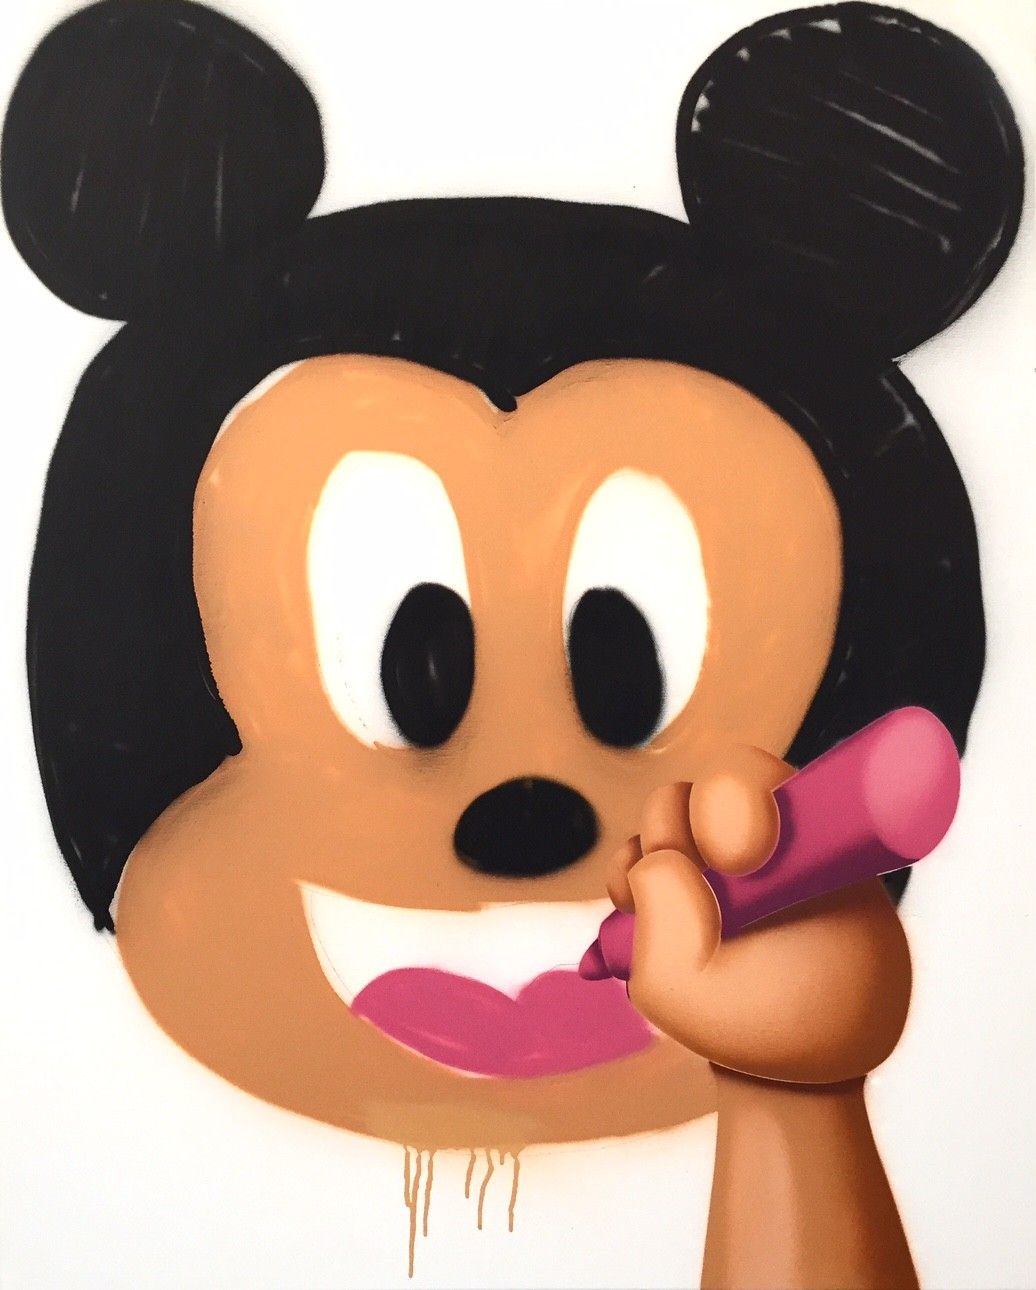 GUM Goma de mascar

 Mickey, 2015

 

 Aerosol sobre lienzo

 Firmado a mano

 P&hellip;